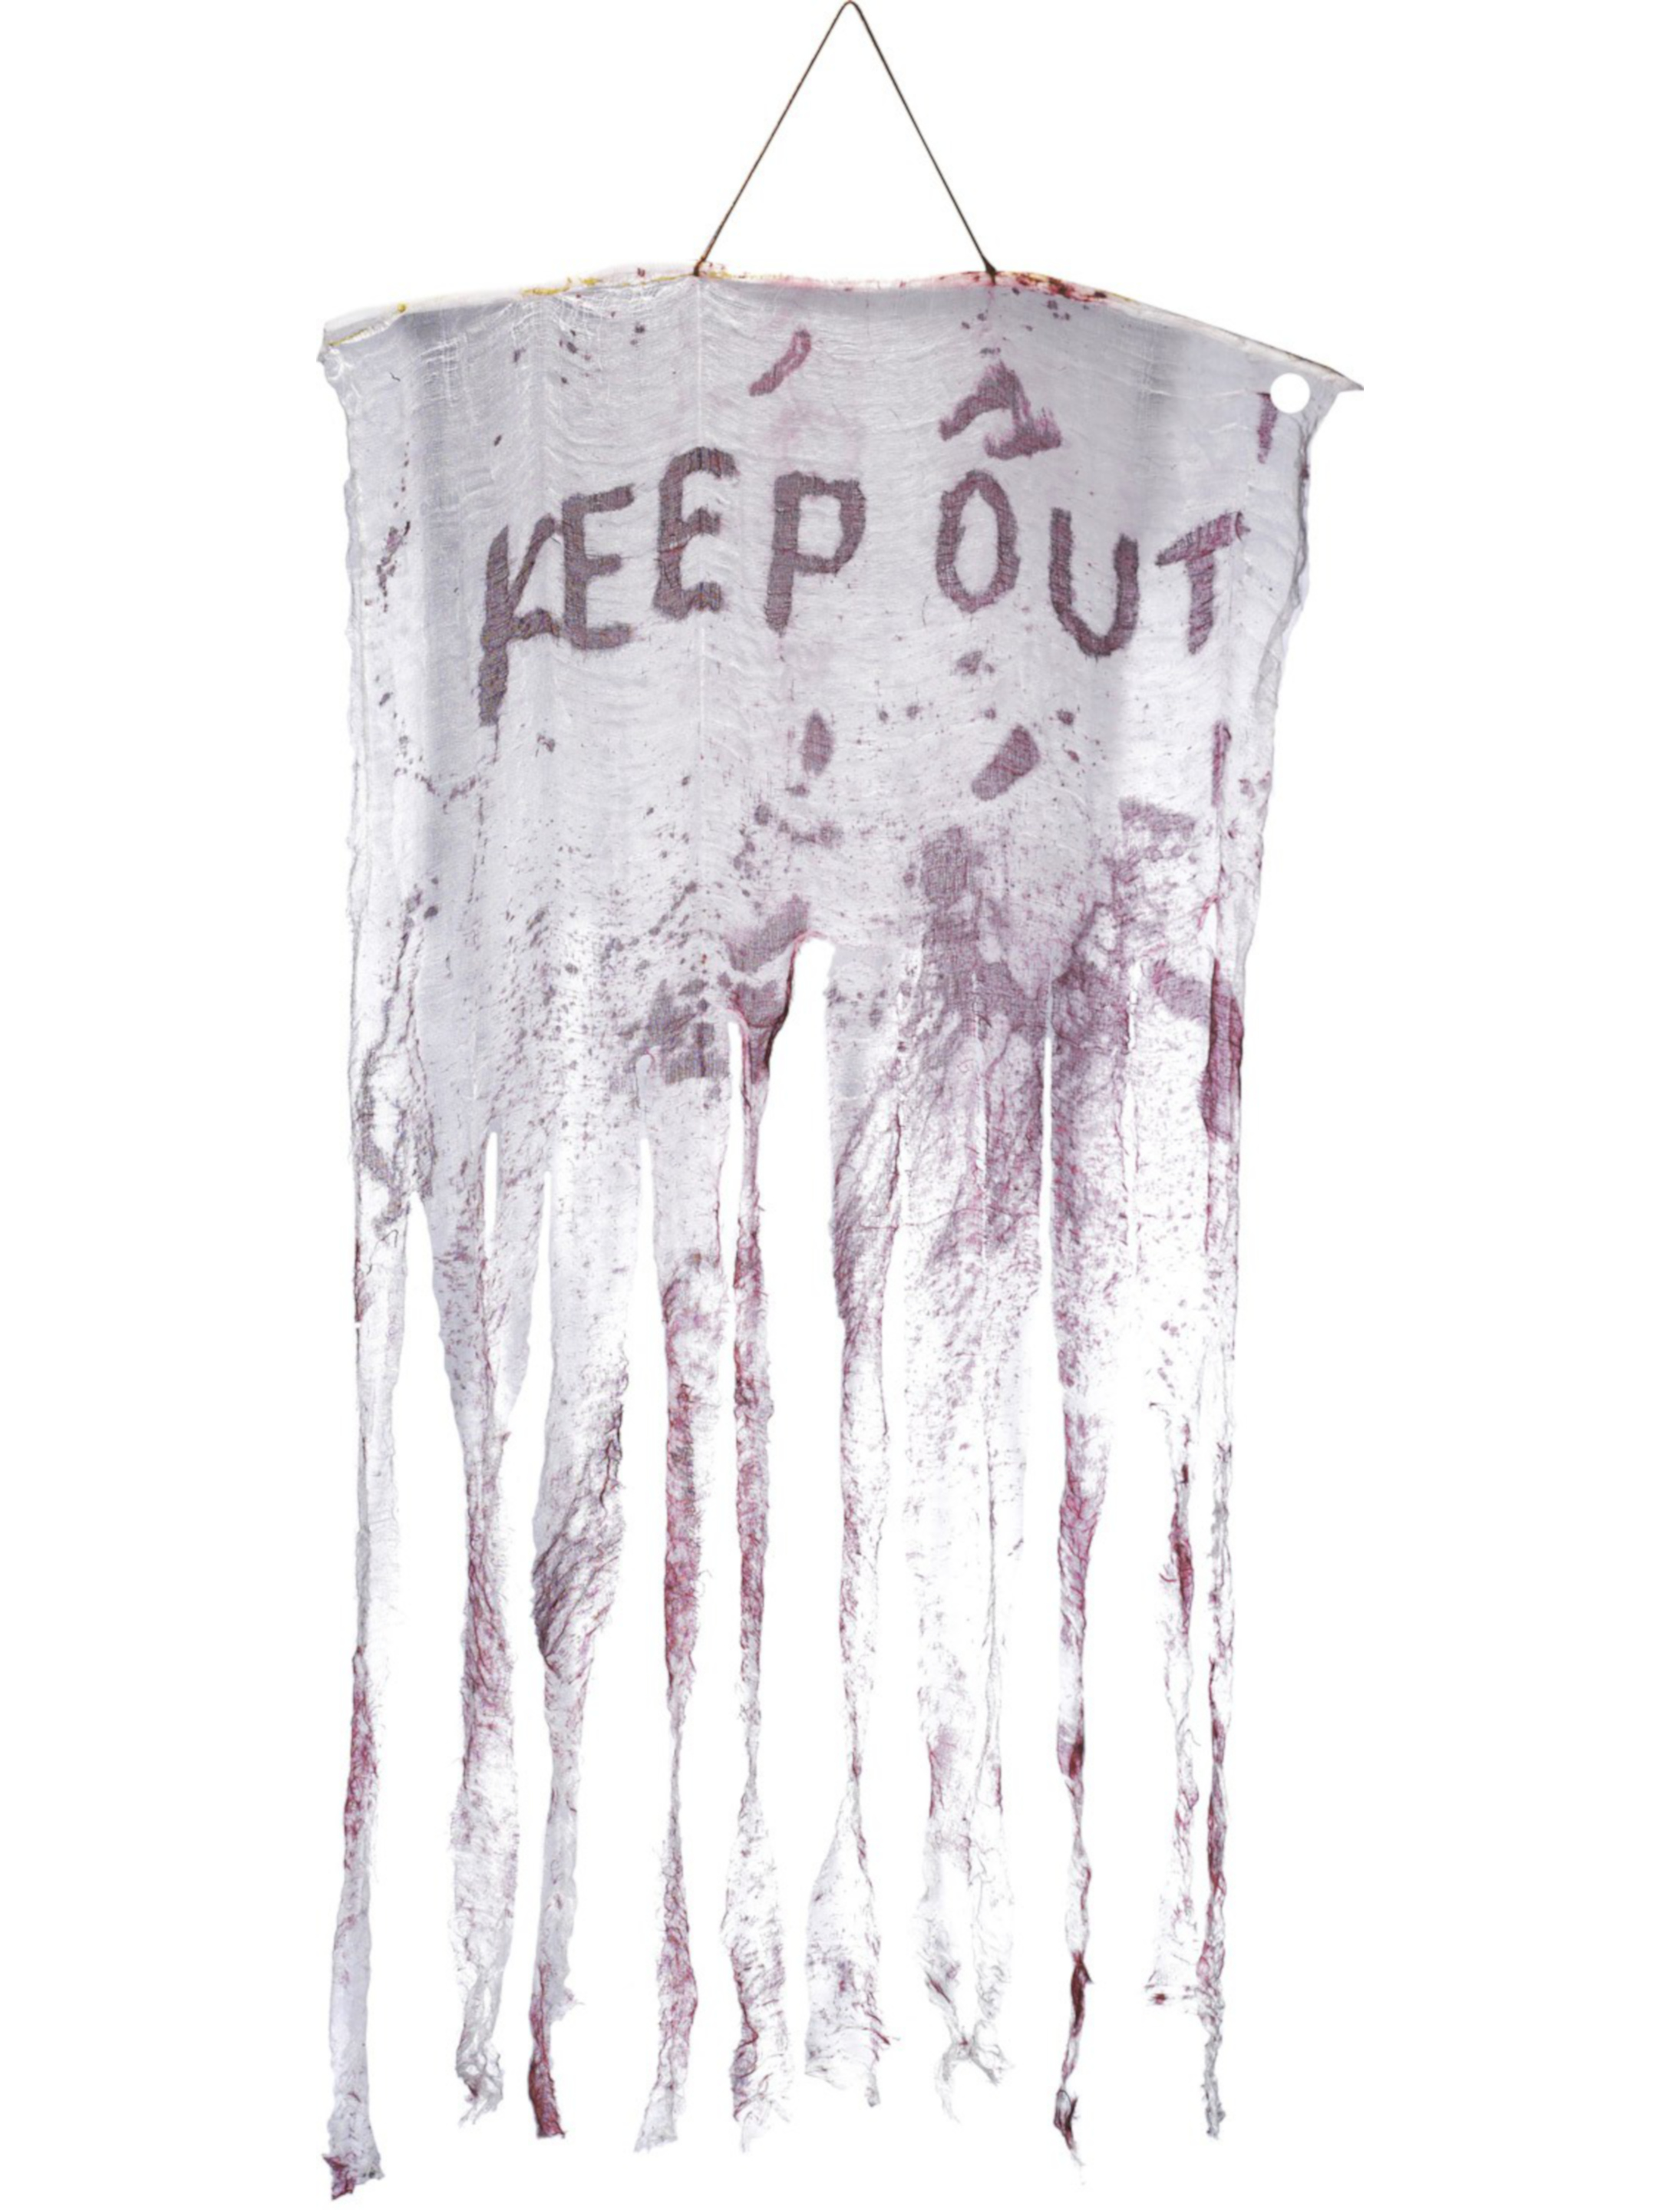 Wanddeko Keep out weiß/rot